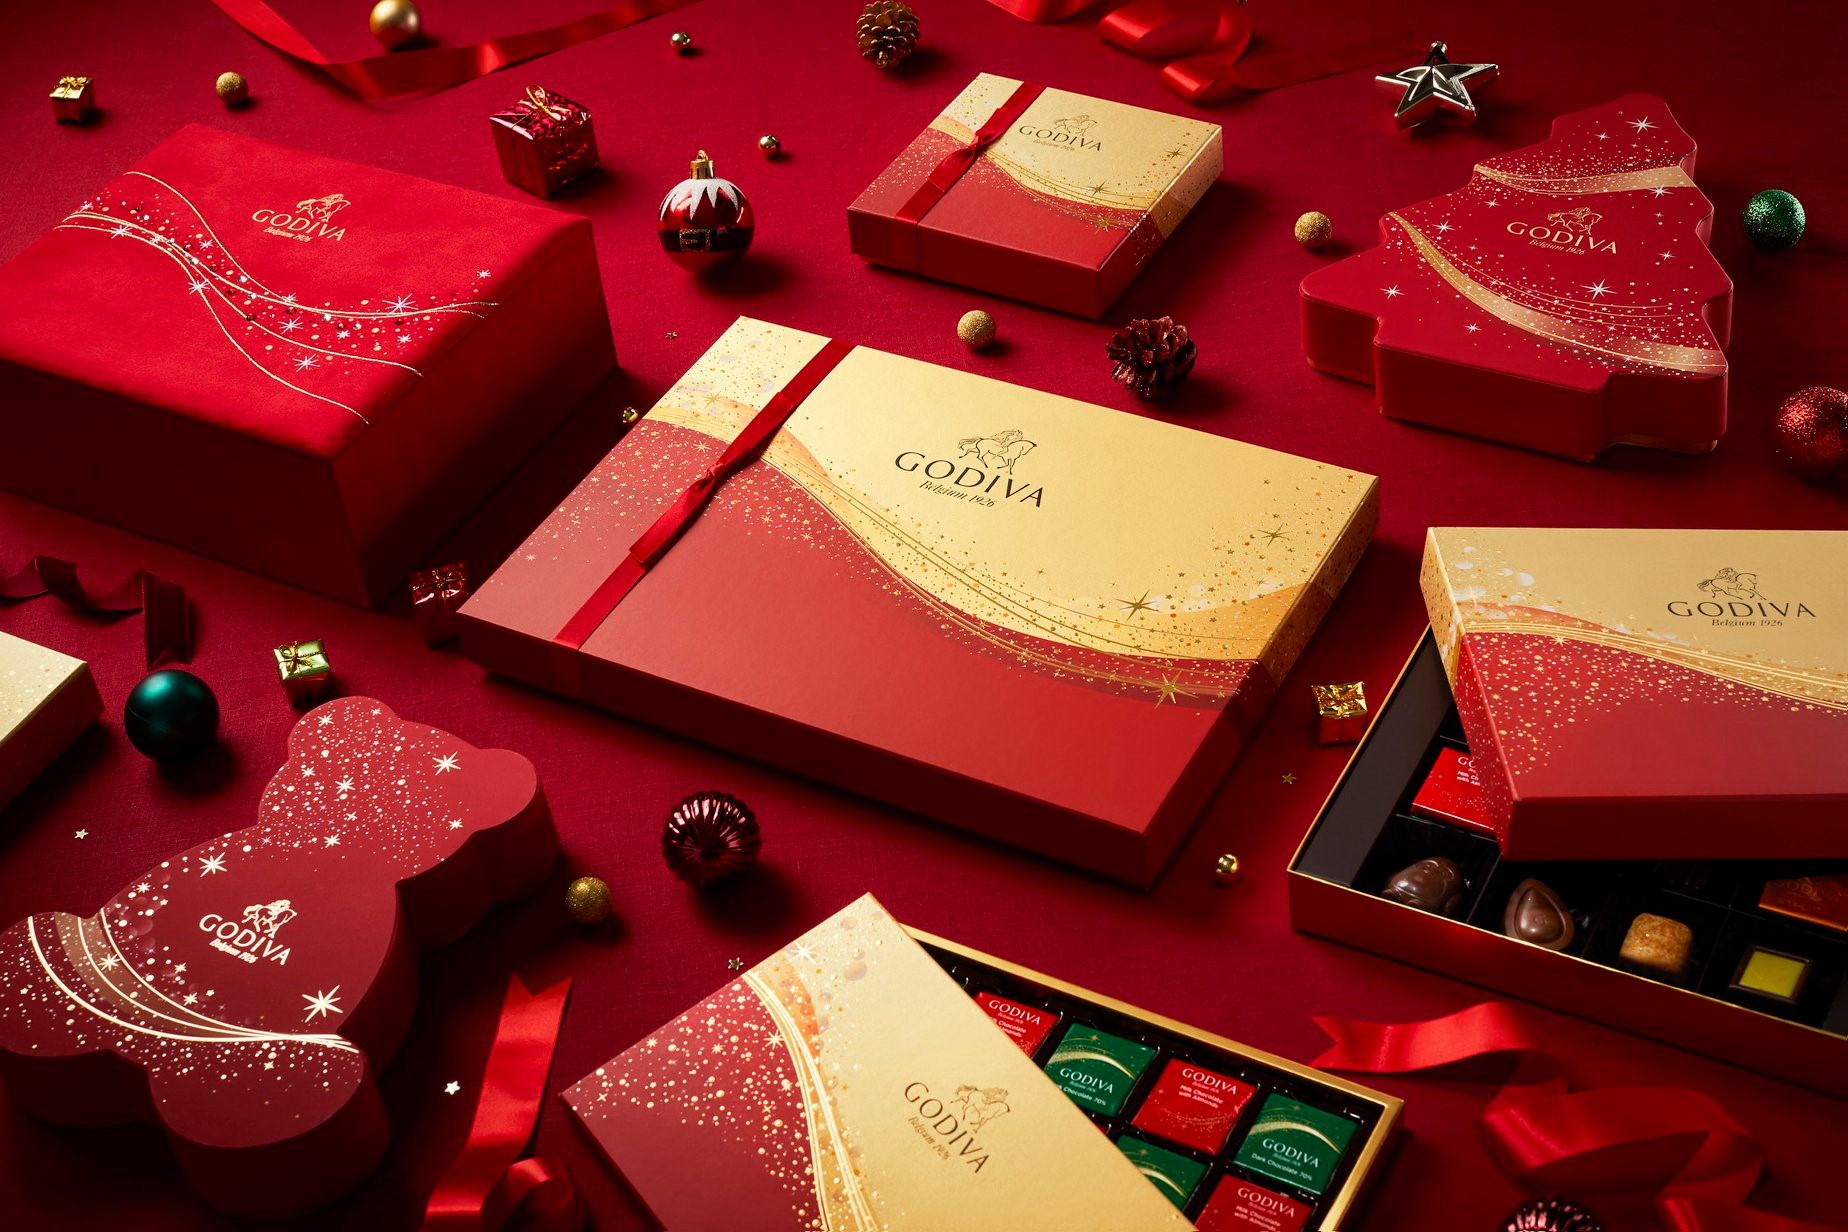 【香港】聖誕節的心動時刻，除了是與心愛的人看閃爍的燈飾🌟，就是最令人期待的交換禮物環節🎁！GODIVA聖誕星耀巧克力禮盒🍫，由高貴的珠寶禮盒裝💎，到玩味十足的可愛巧克力小熊🐻及小樹禮盒🎄等，正待你揭開箇中層層驚喜。今個聖誕，與親朋好友和摯愛分享甜蜜溫馨的滋味！